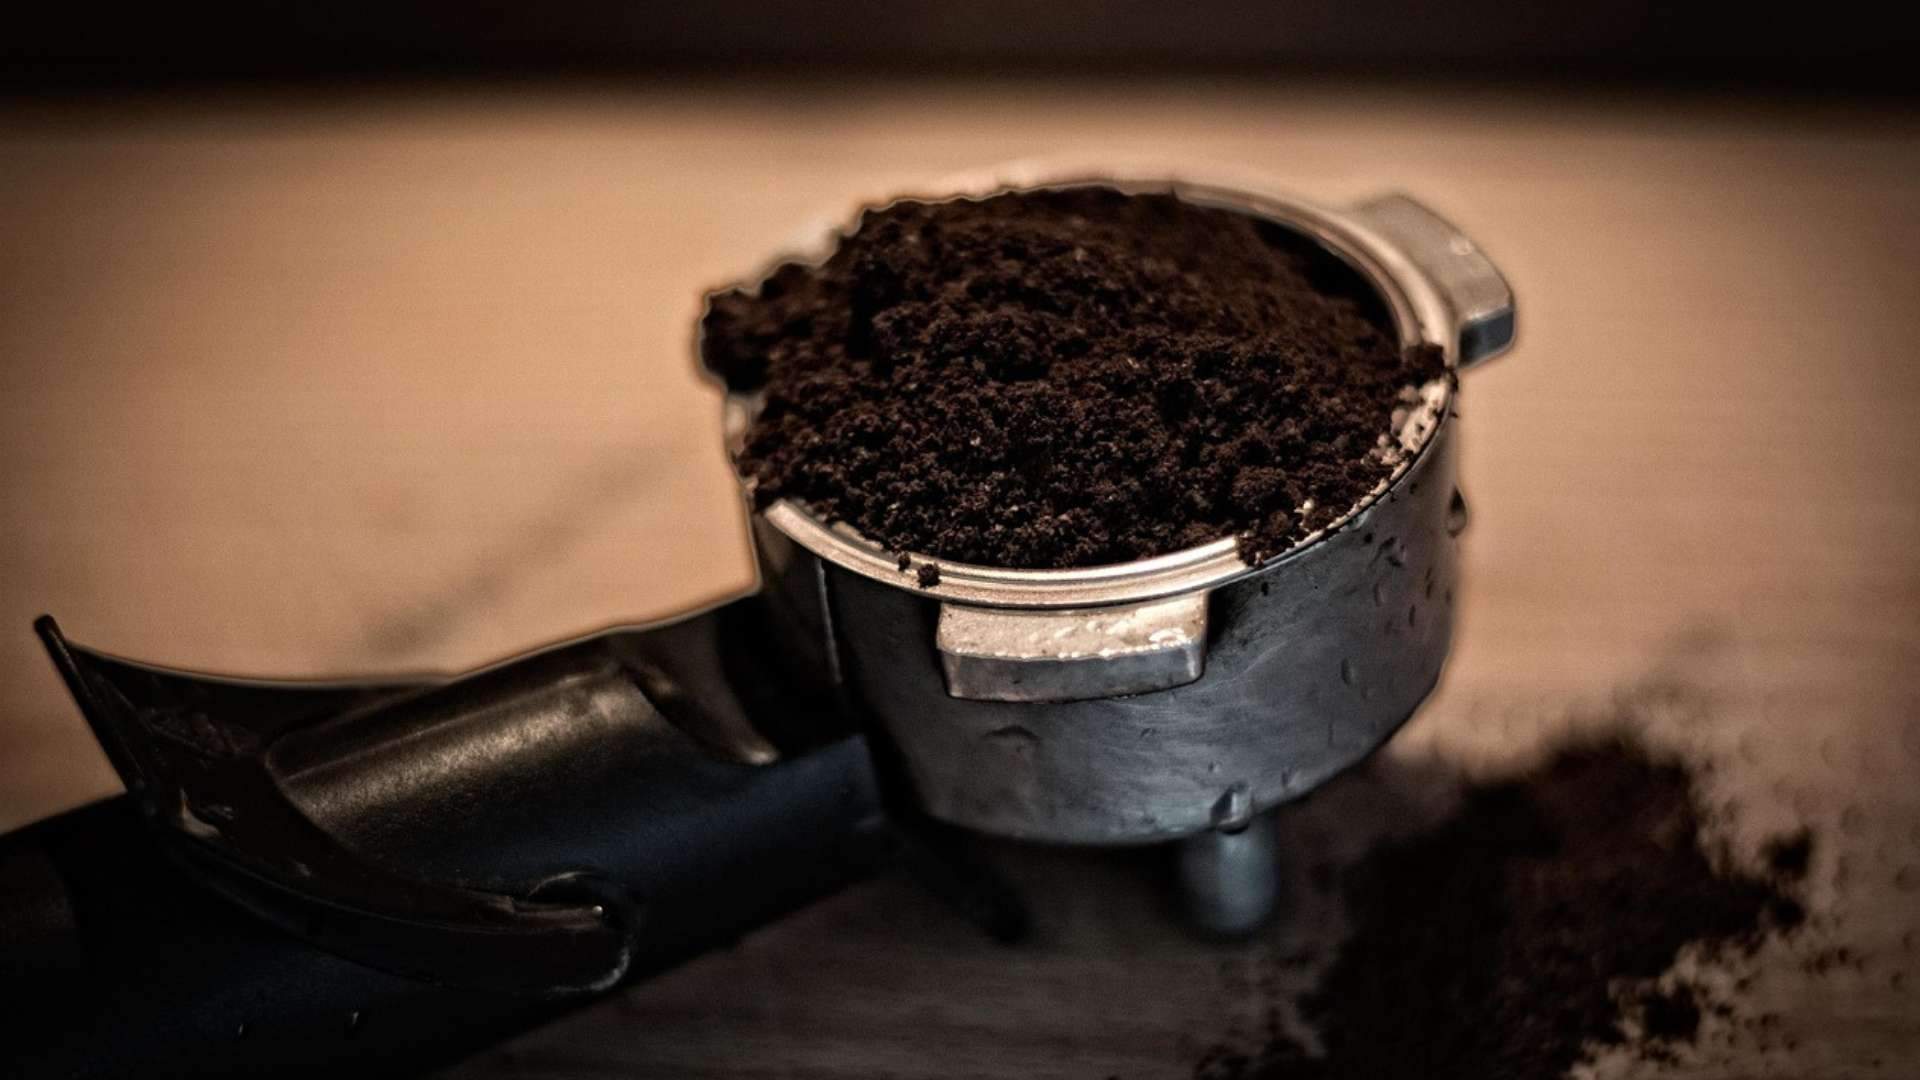 Estos son los increíbles usos que le puedes dar a los posos de café que siempre tiras. ¿Los conoces?